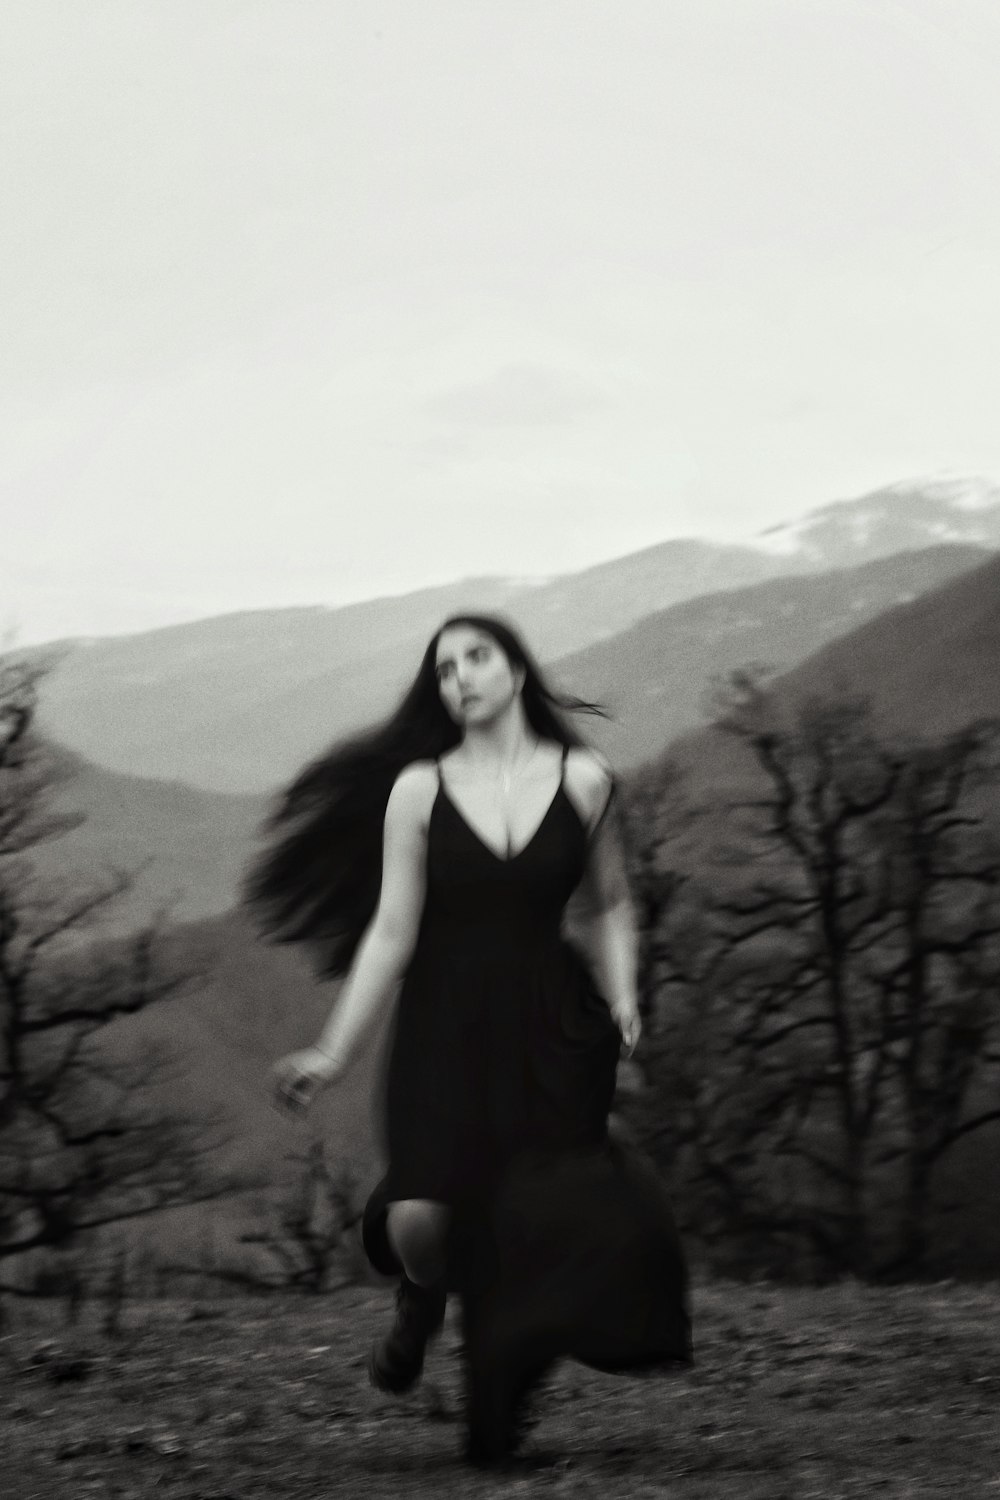 a woman in a black dress is walking in a field